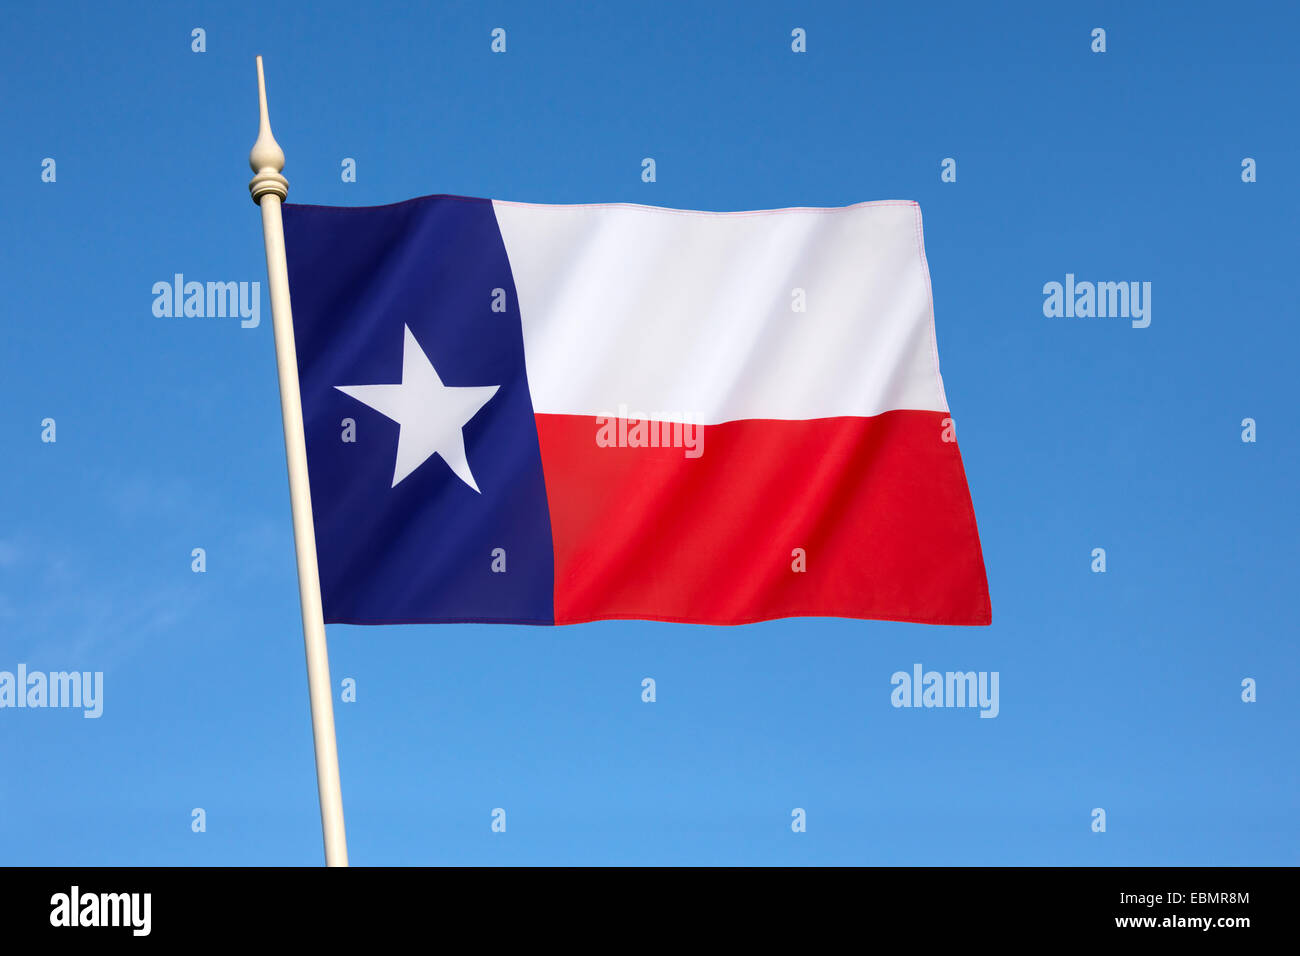 Le drapeau de l'état du Texas - États-Unis d'Amérique Banque D'Images